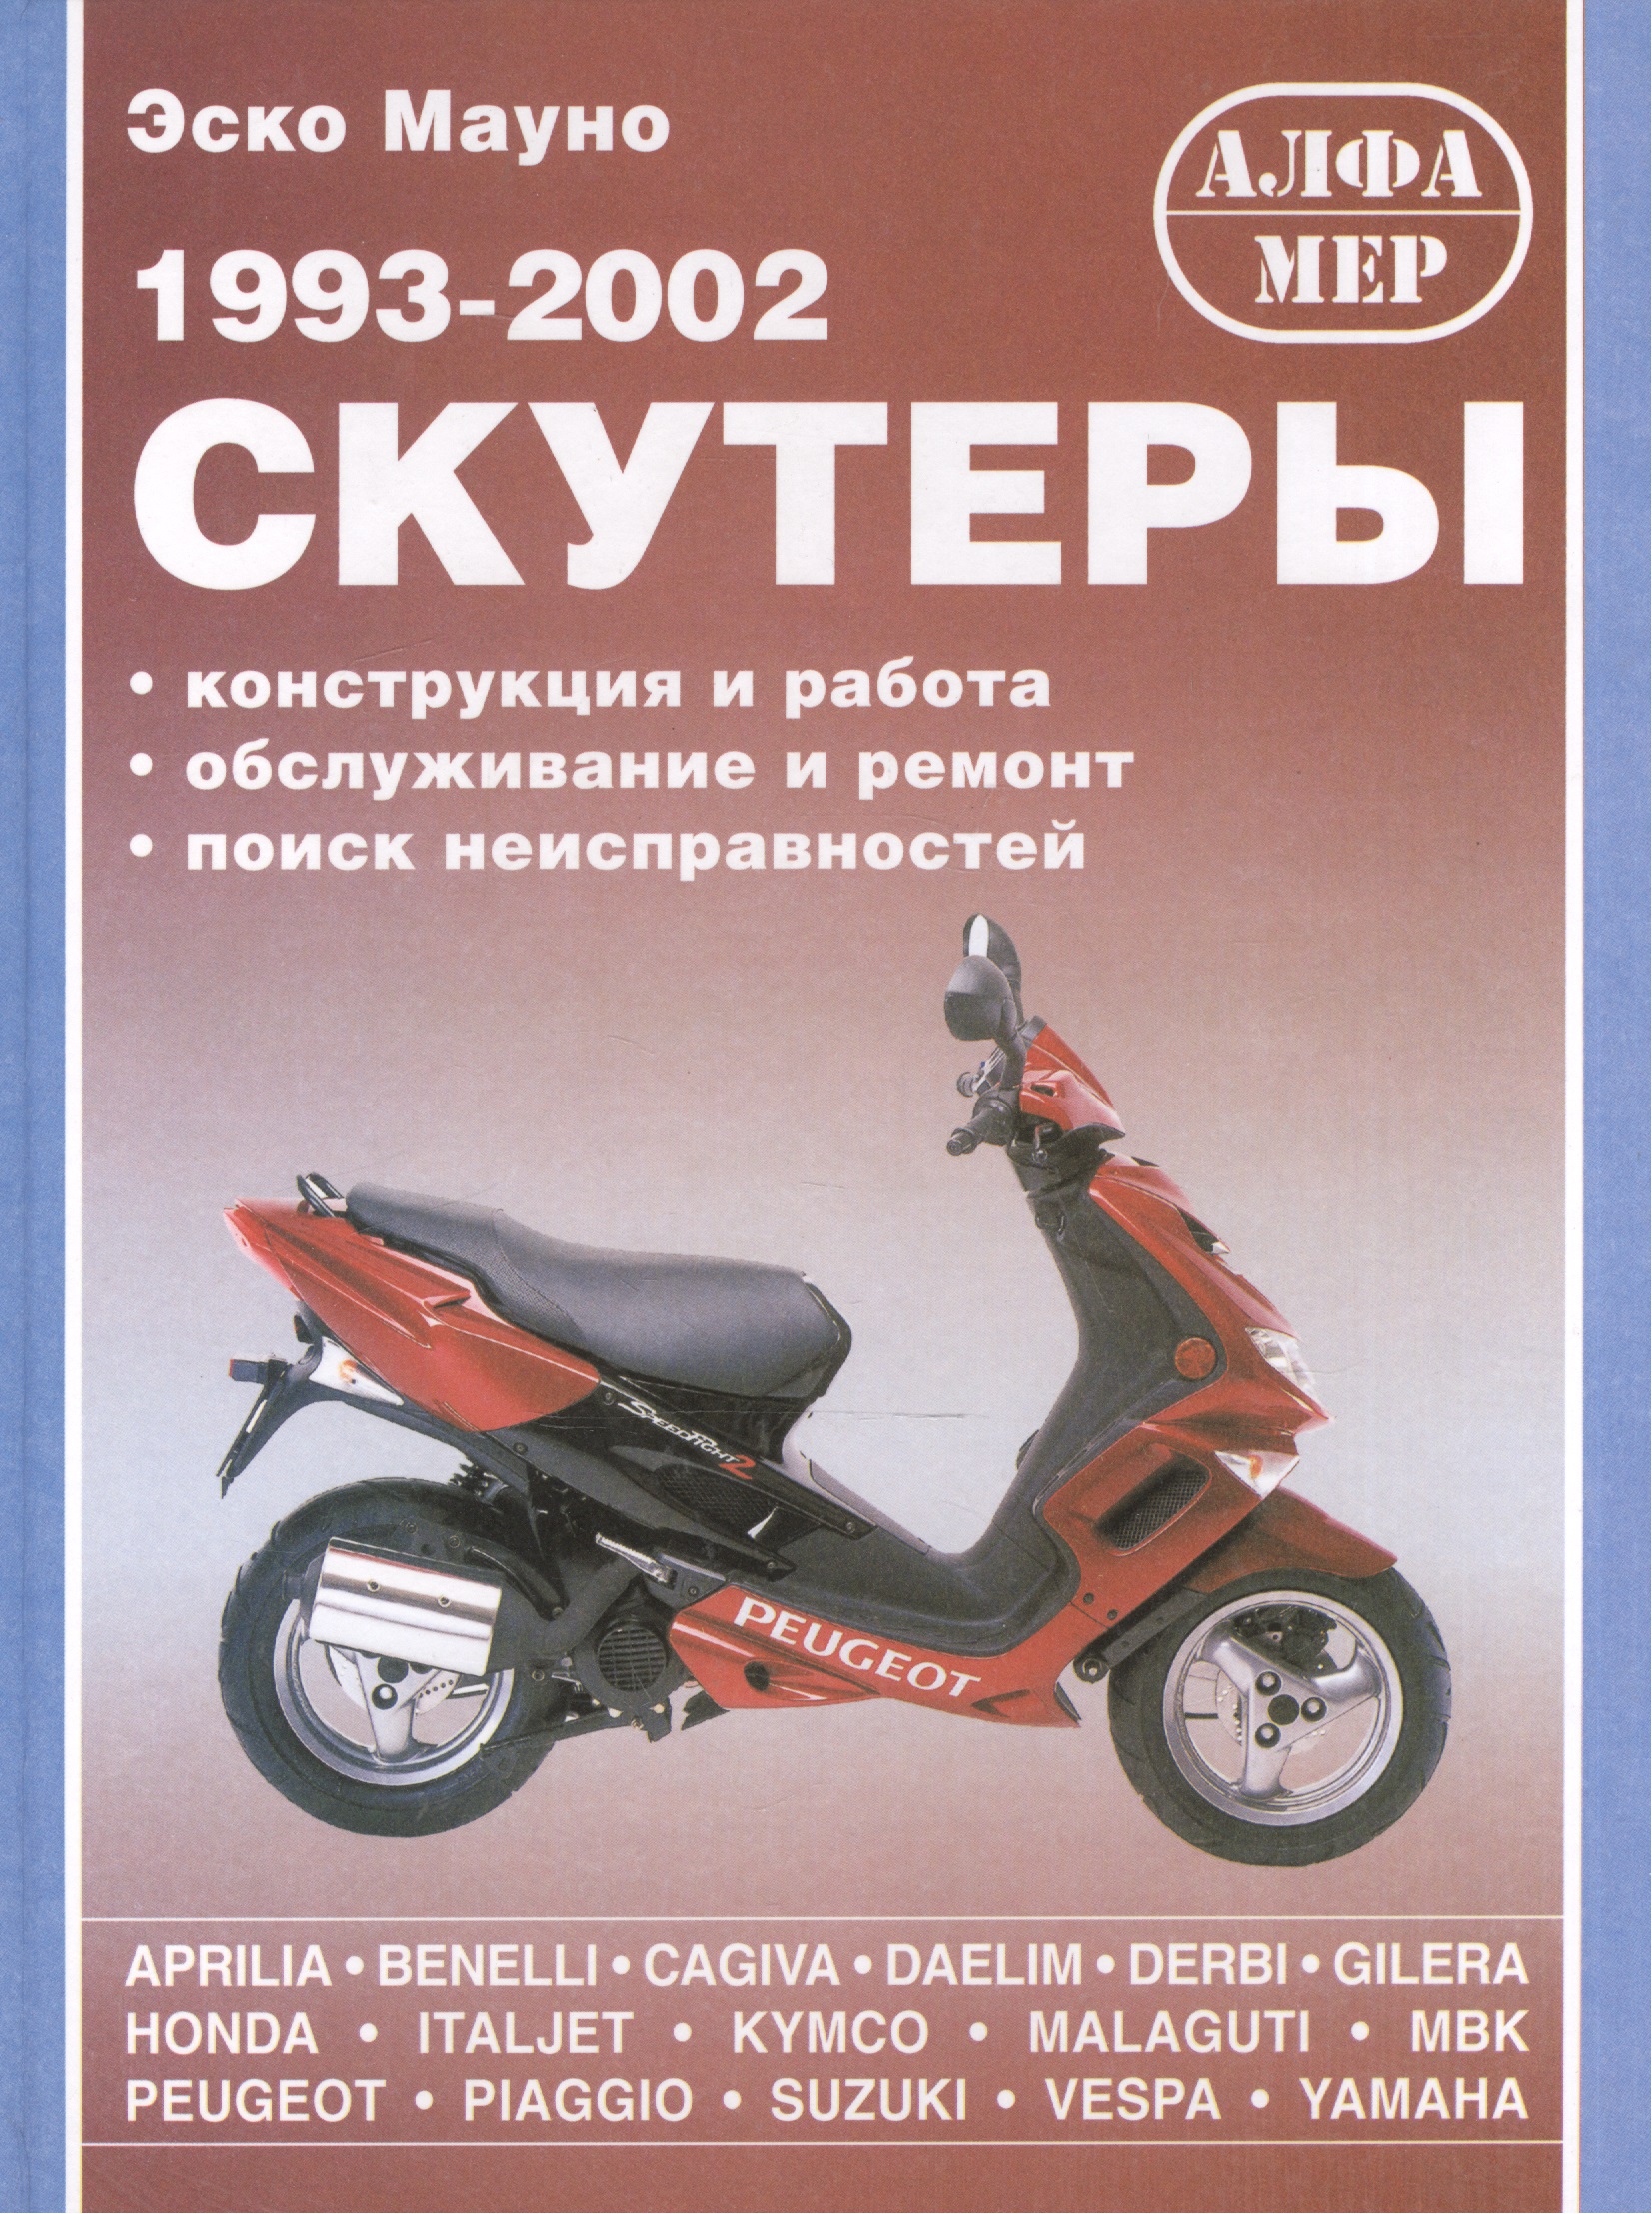  1993-2002